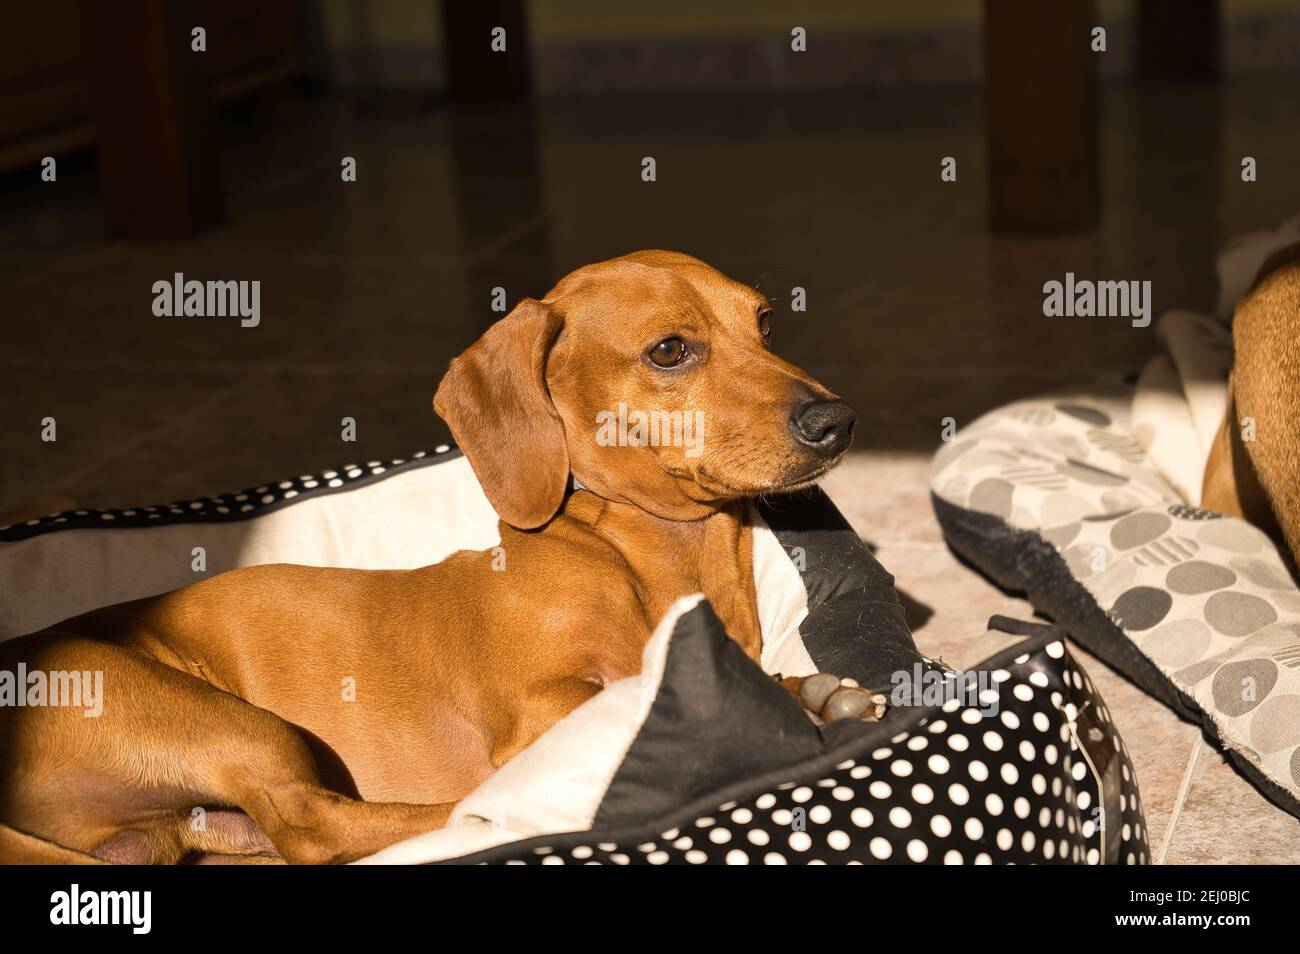 Bellissimo cane dachshund purebred, chiamato anche teckel, cane viennese o cane salsiccia, su un letto di cane guardando la macchina fotografica. Cane Foto Stock